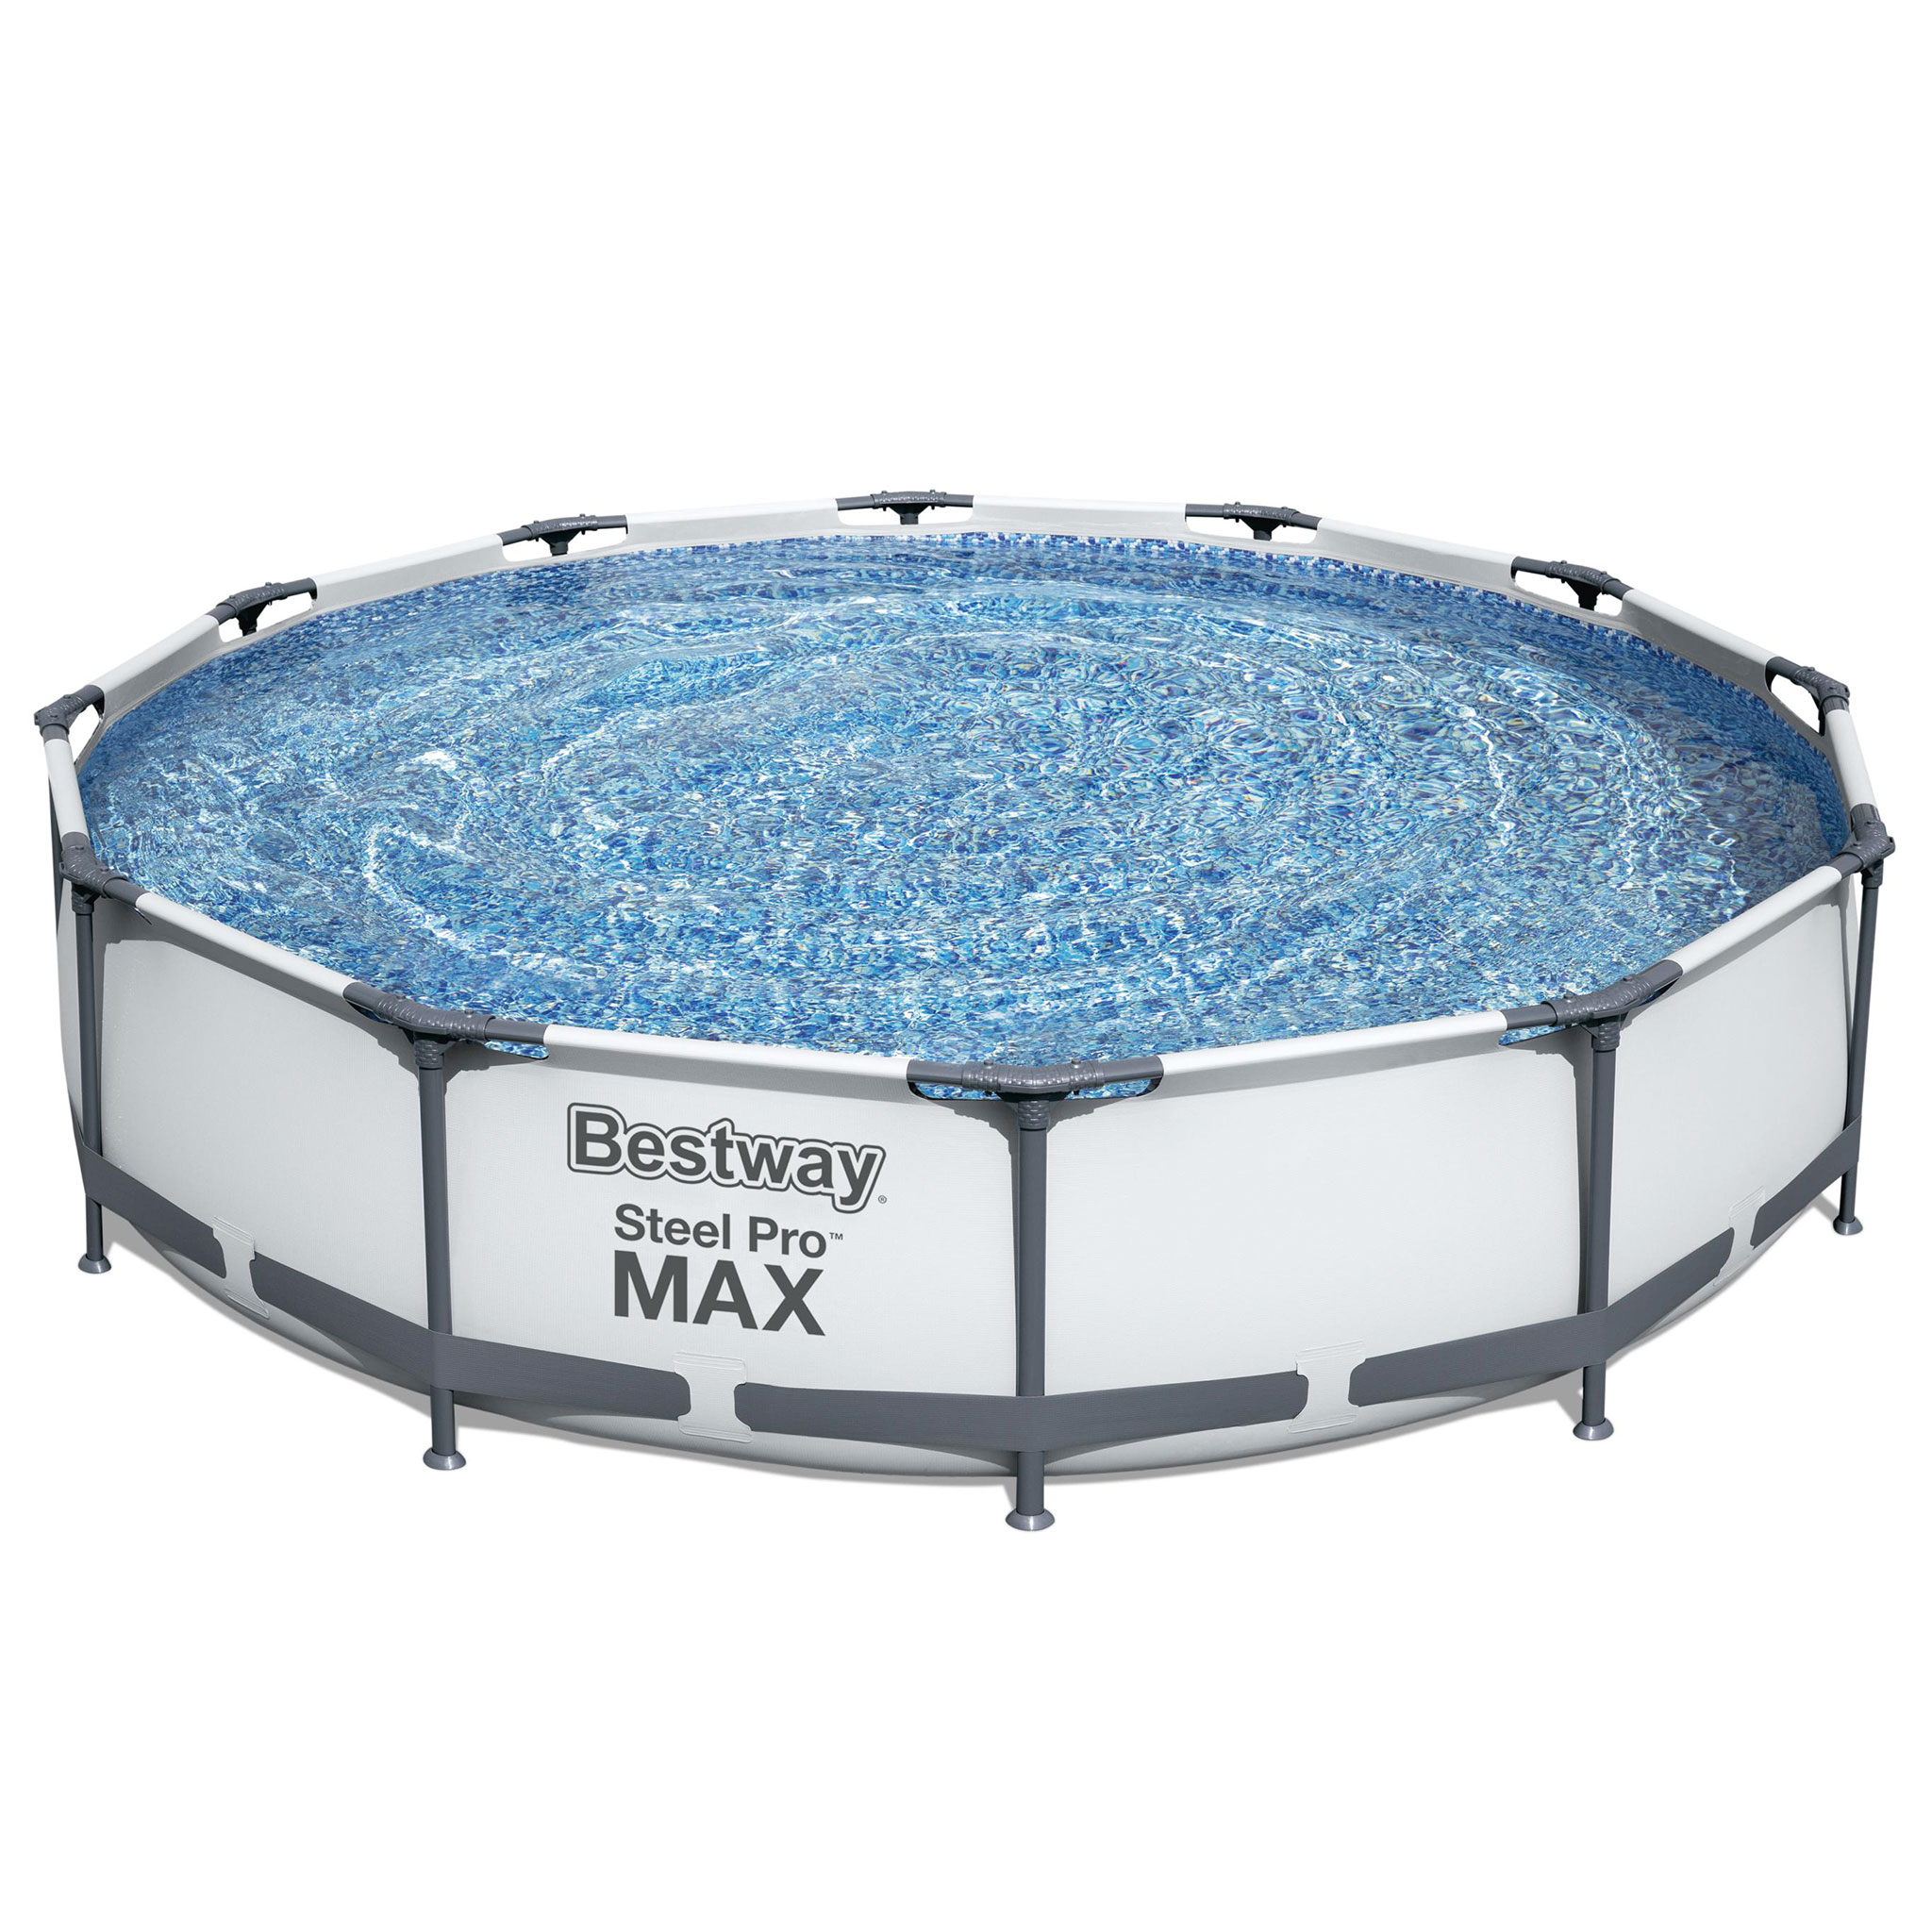 Bestway pool ovan mark Ø3,66m - 76cm djup | Steel Pro MAX (56416)